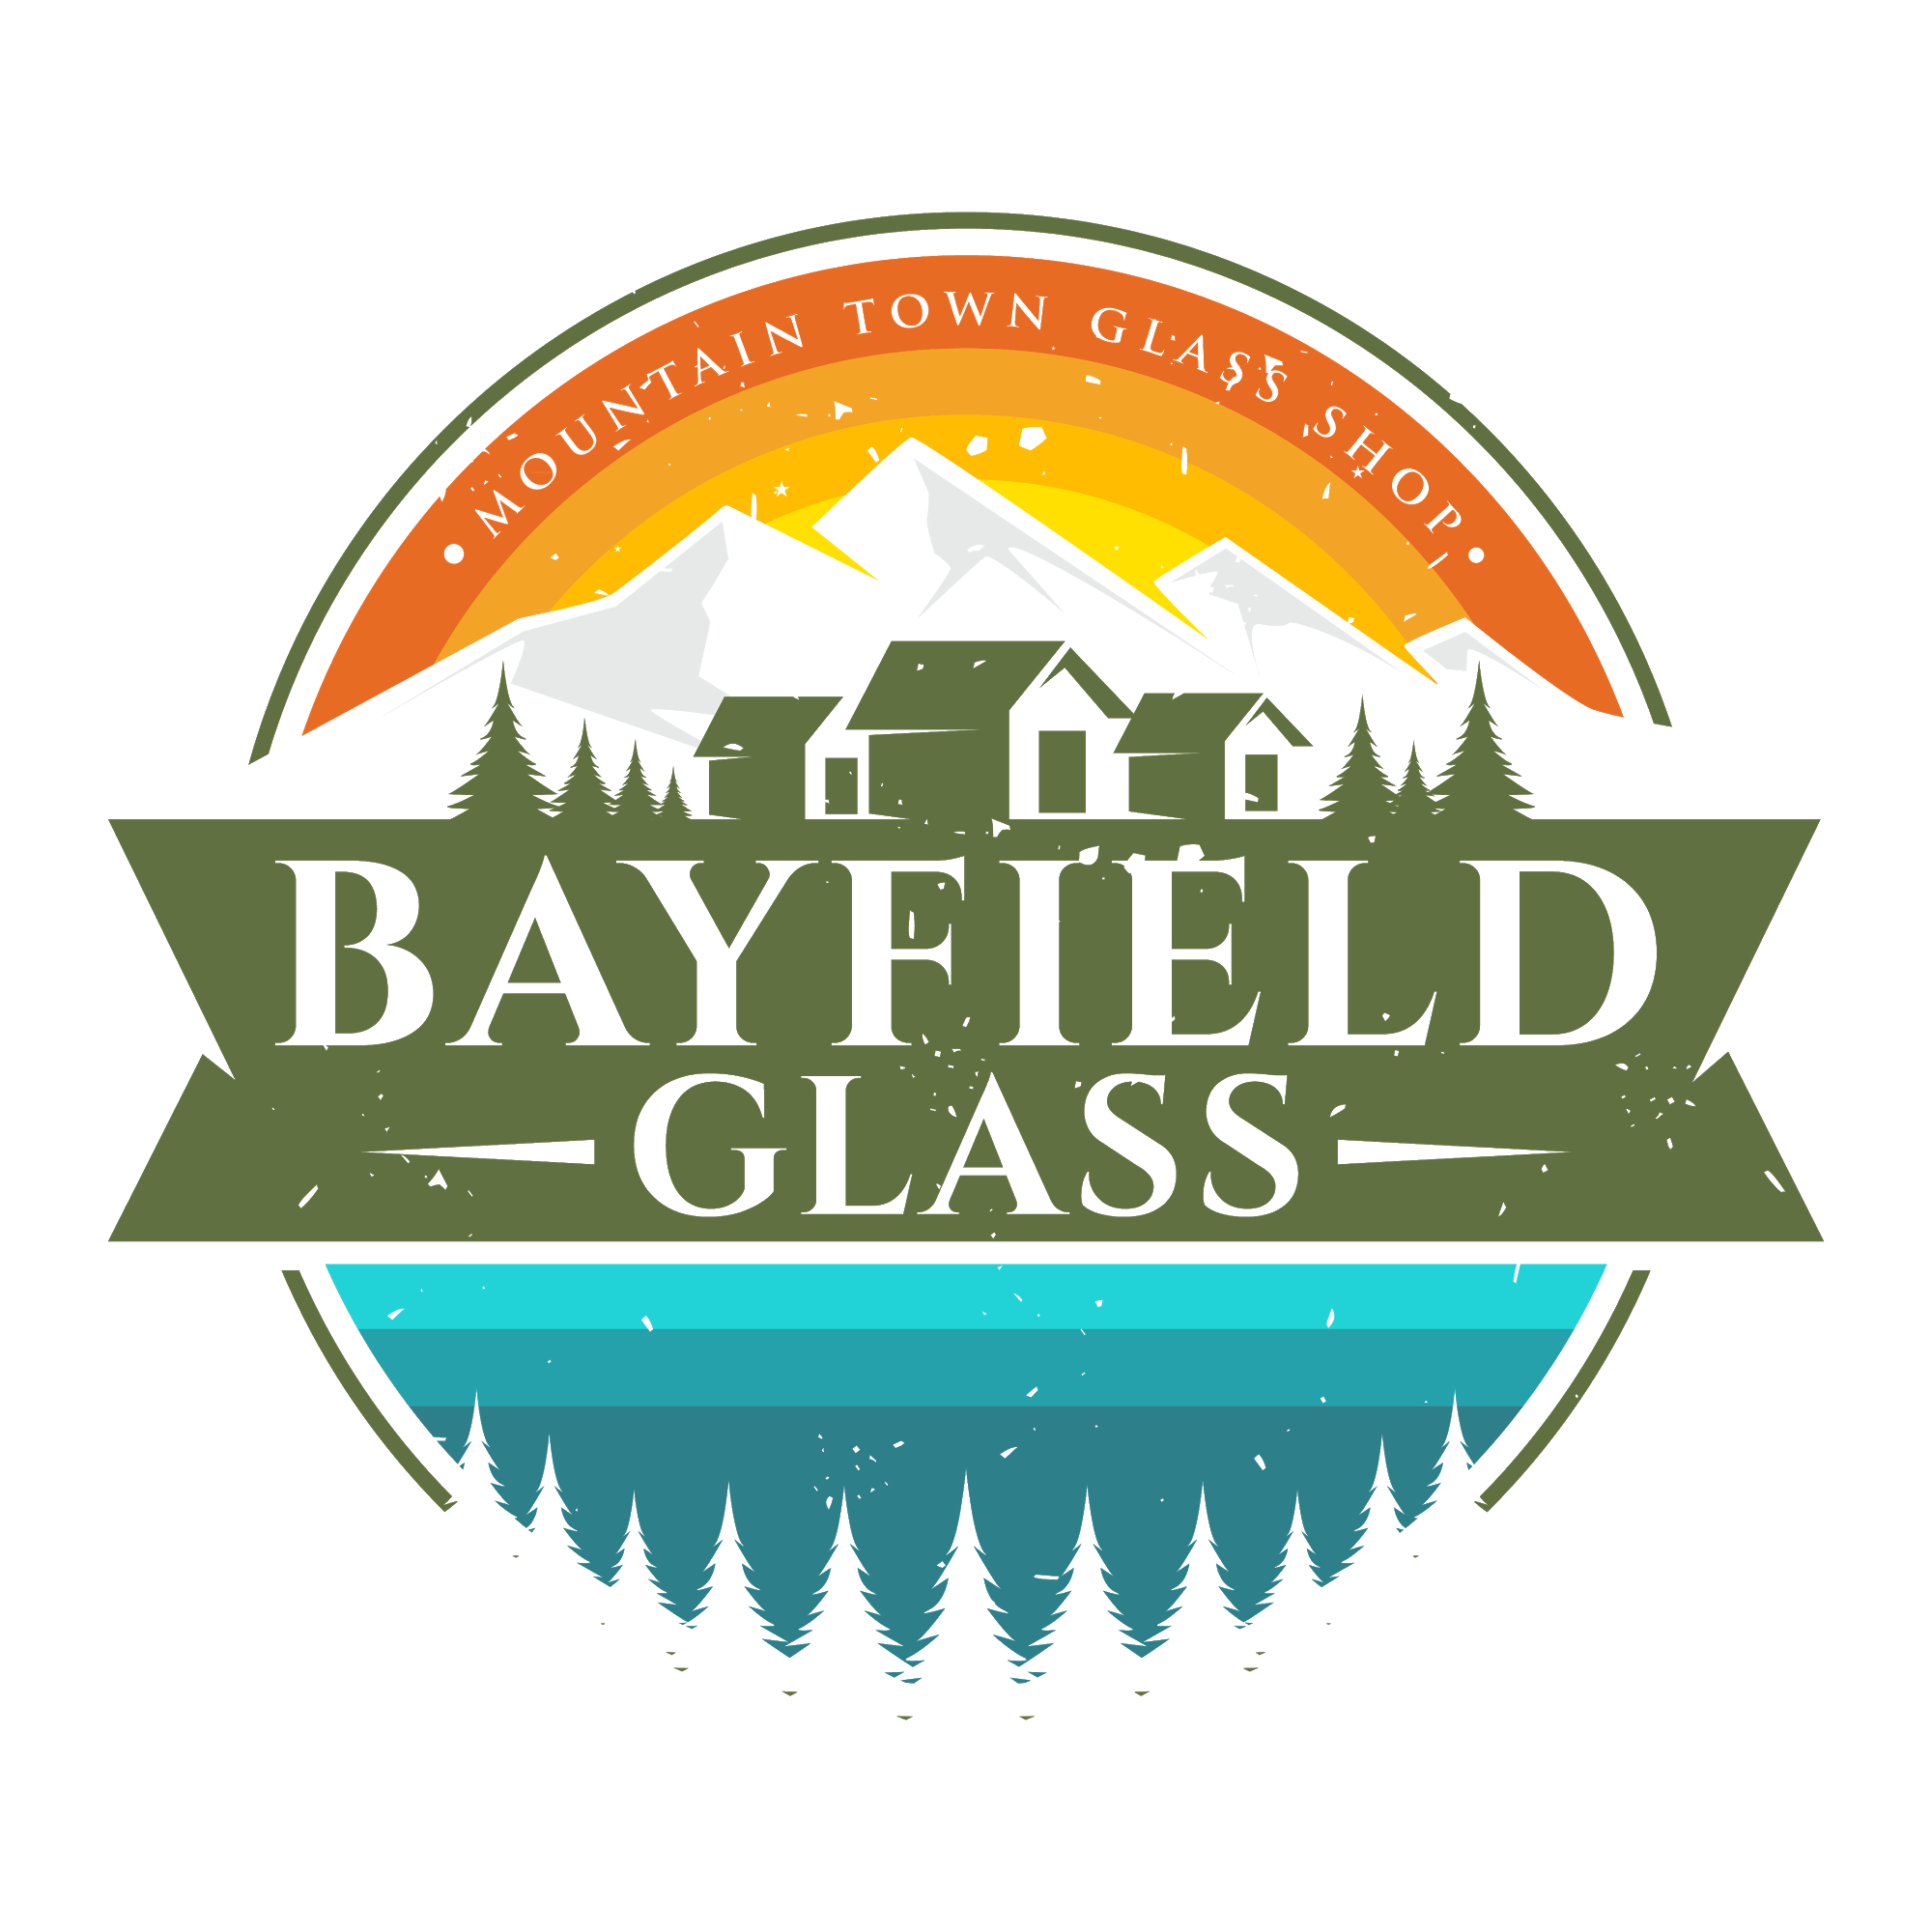 BAYFIELD GLASS